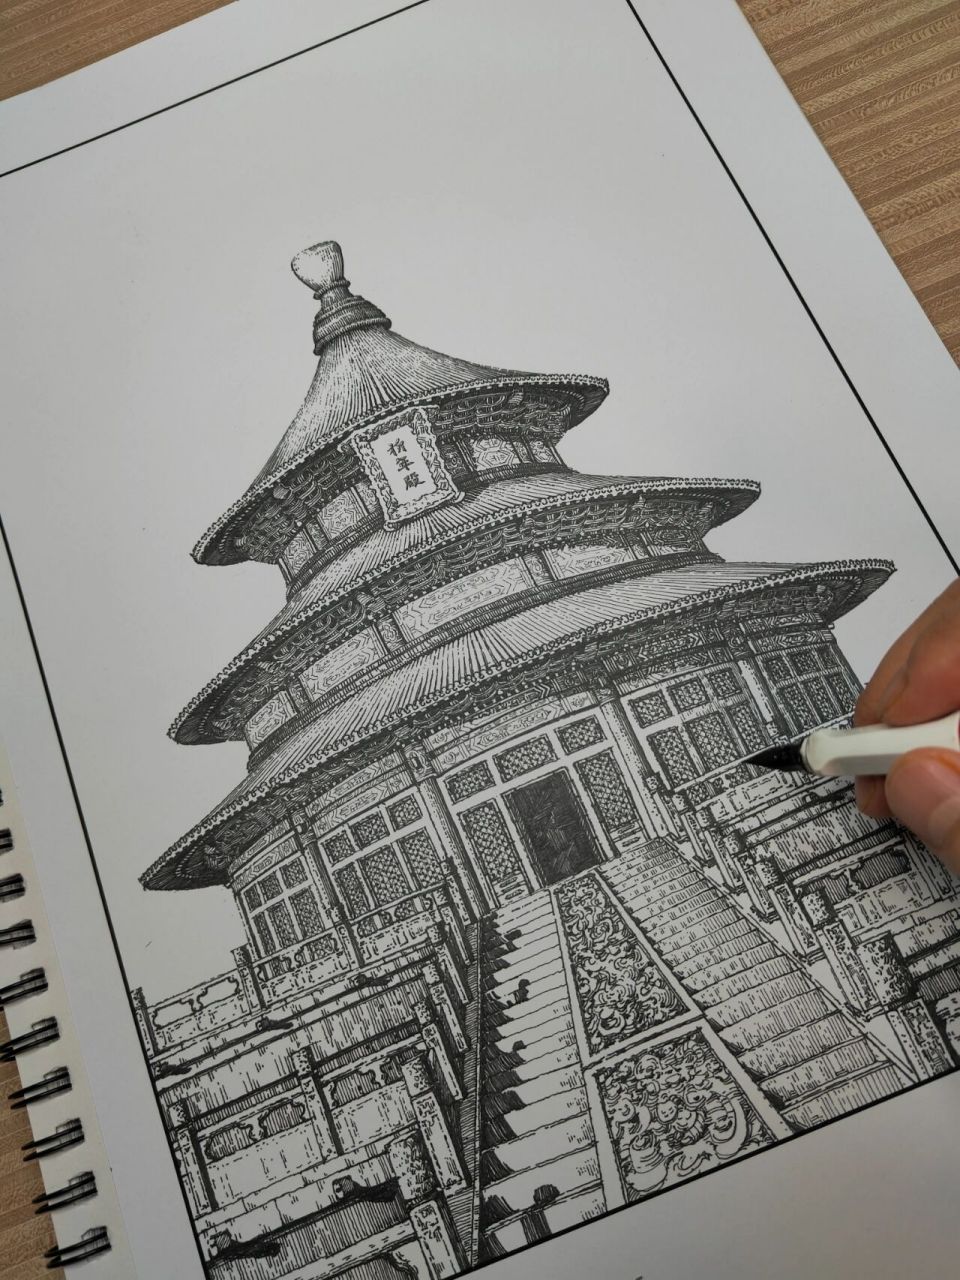 【钢笔画】祈年殿 祈年殿前身大祀殿,是北京天坛的主体建筑,又称